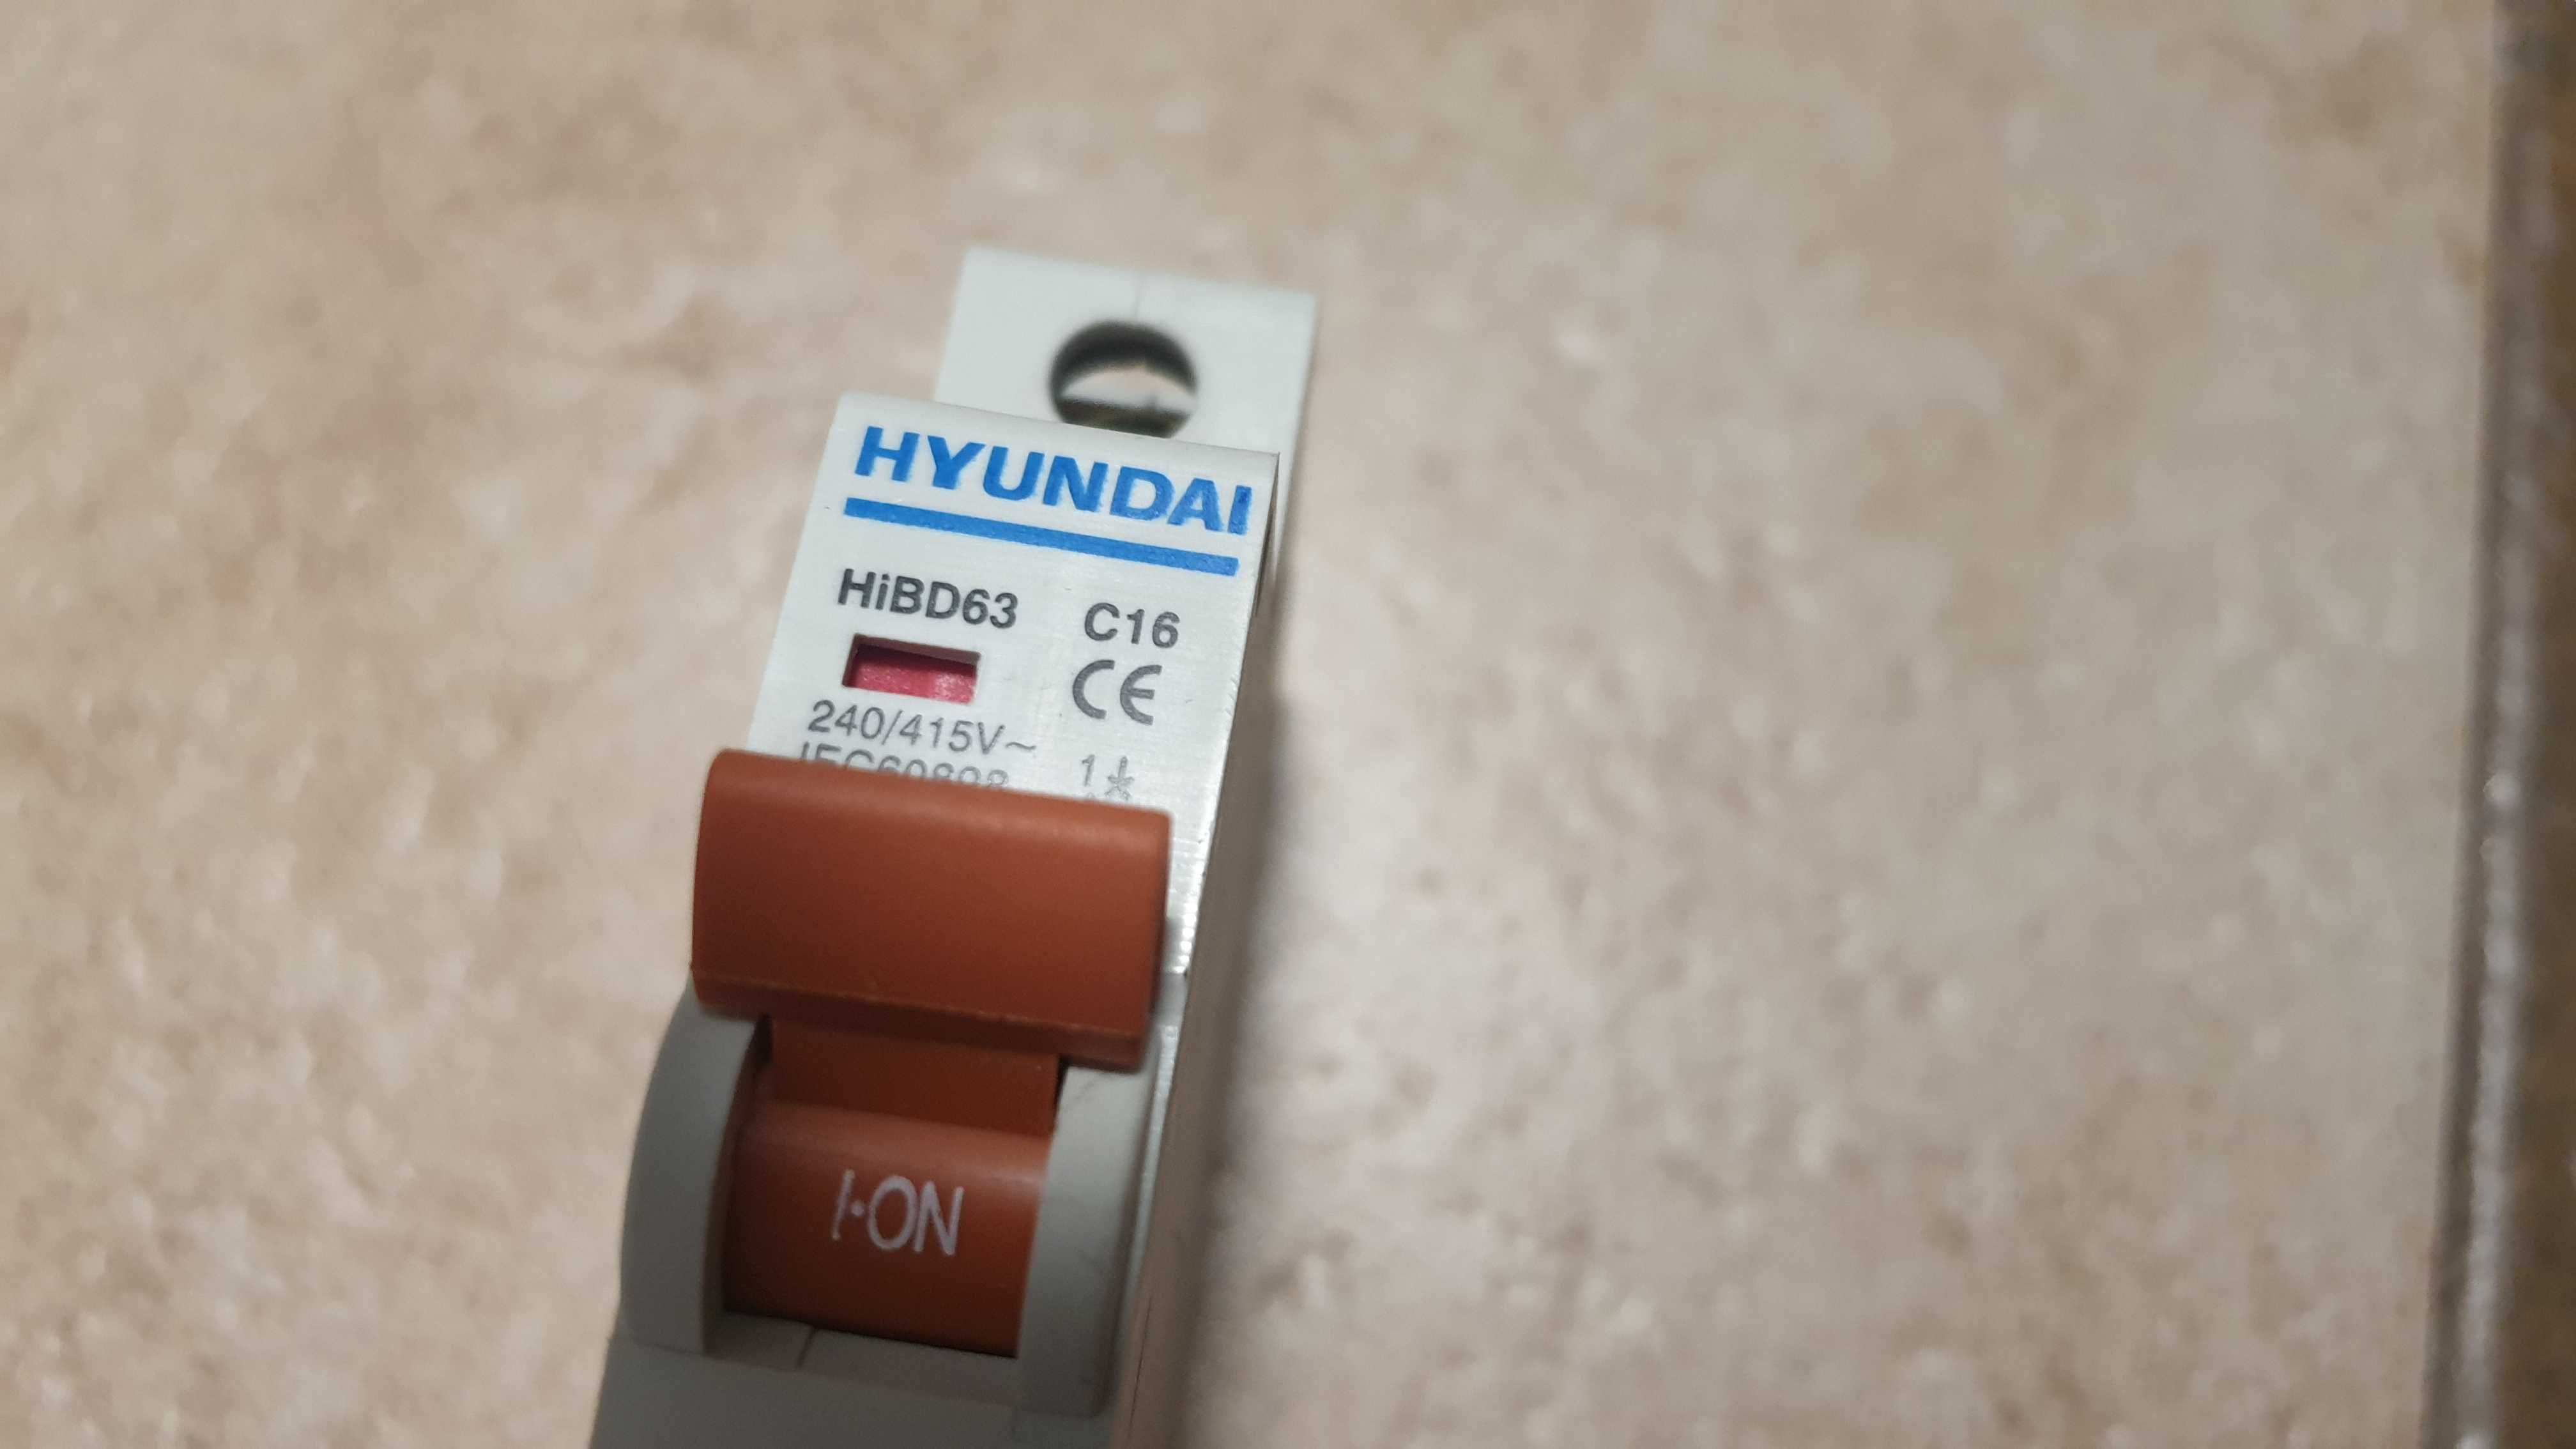 HiBD63 C16 выключатель автоматический Hyundai новый